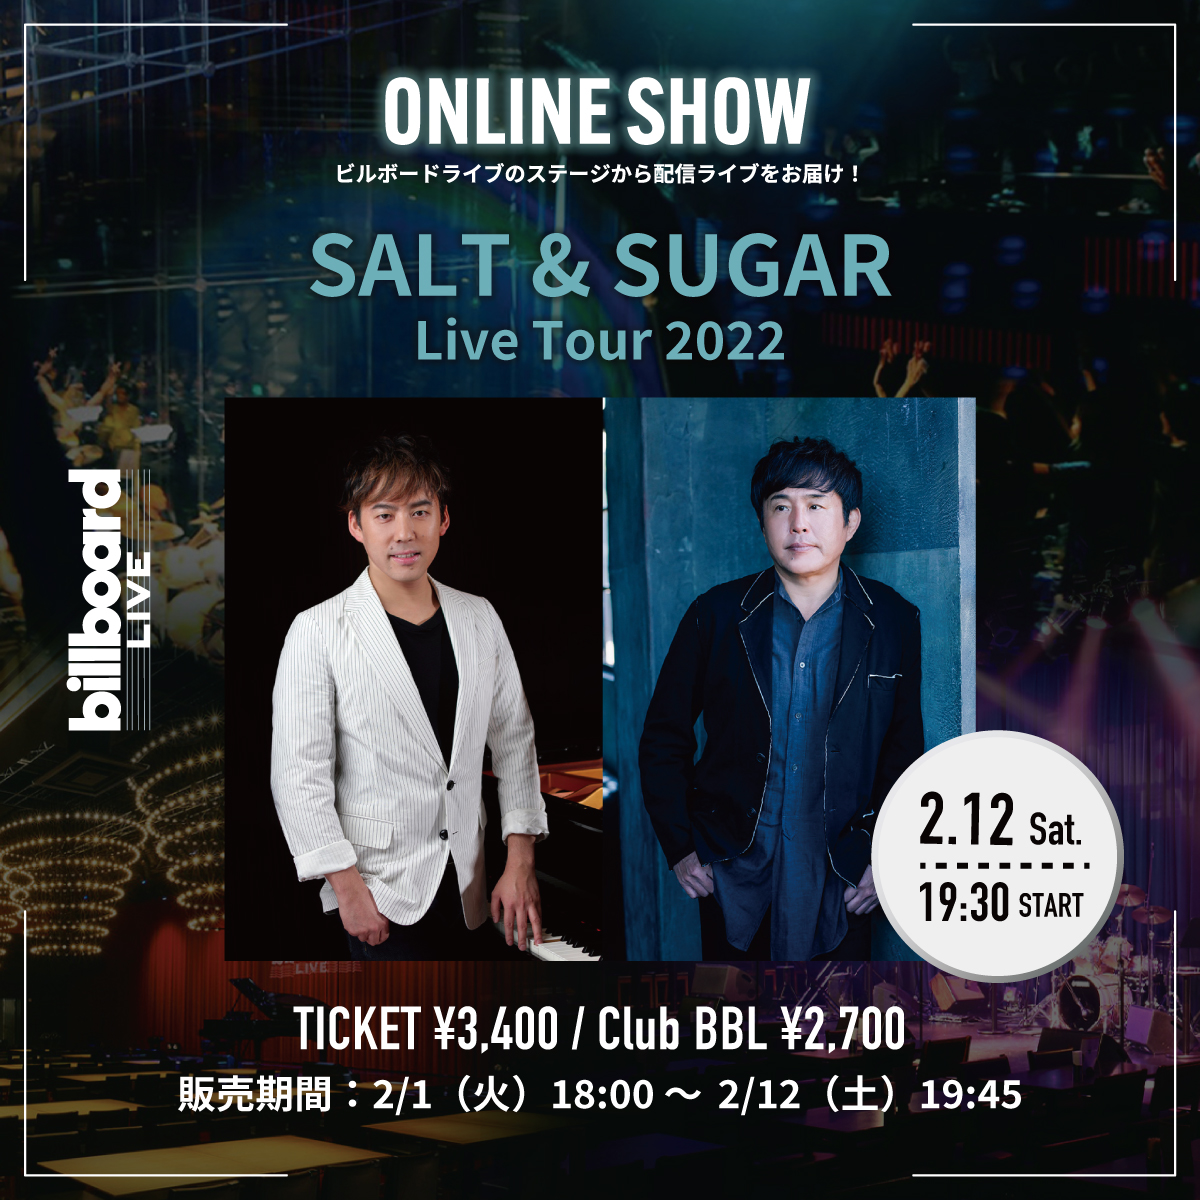 塩谷哲と佐藤竹善によるユニットSALT&SUGAR、Billboard Live TOKYO公演